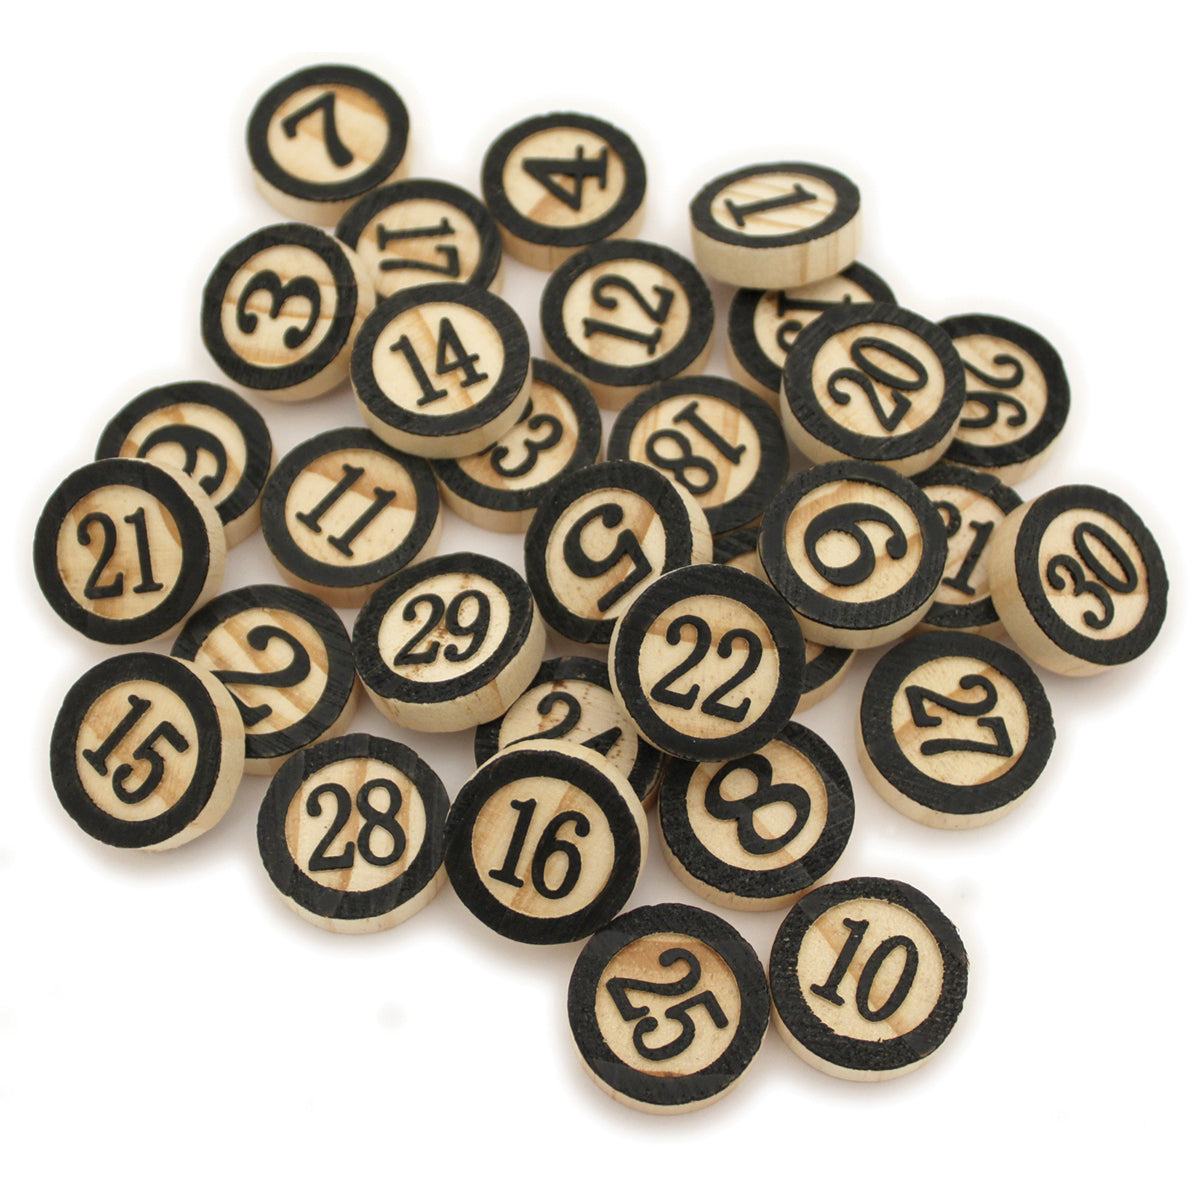 Tuiles de bingo en bois récupéré